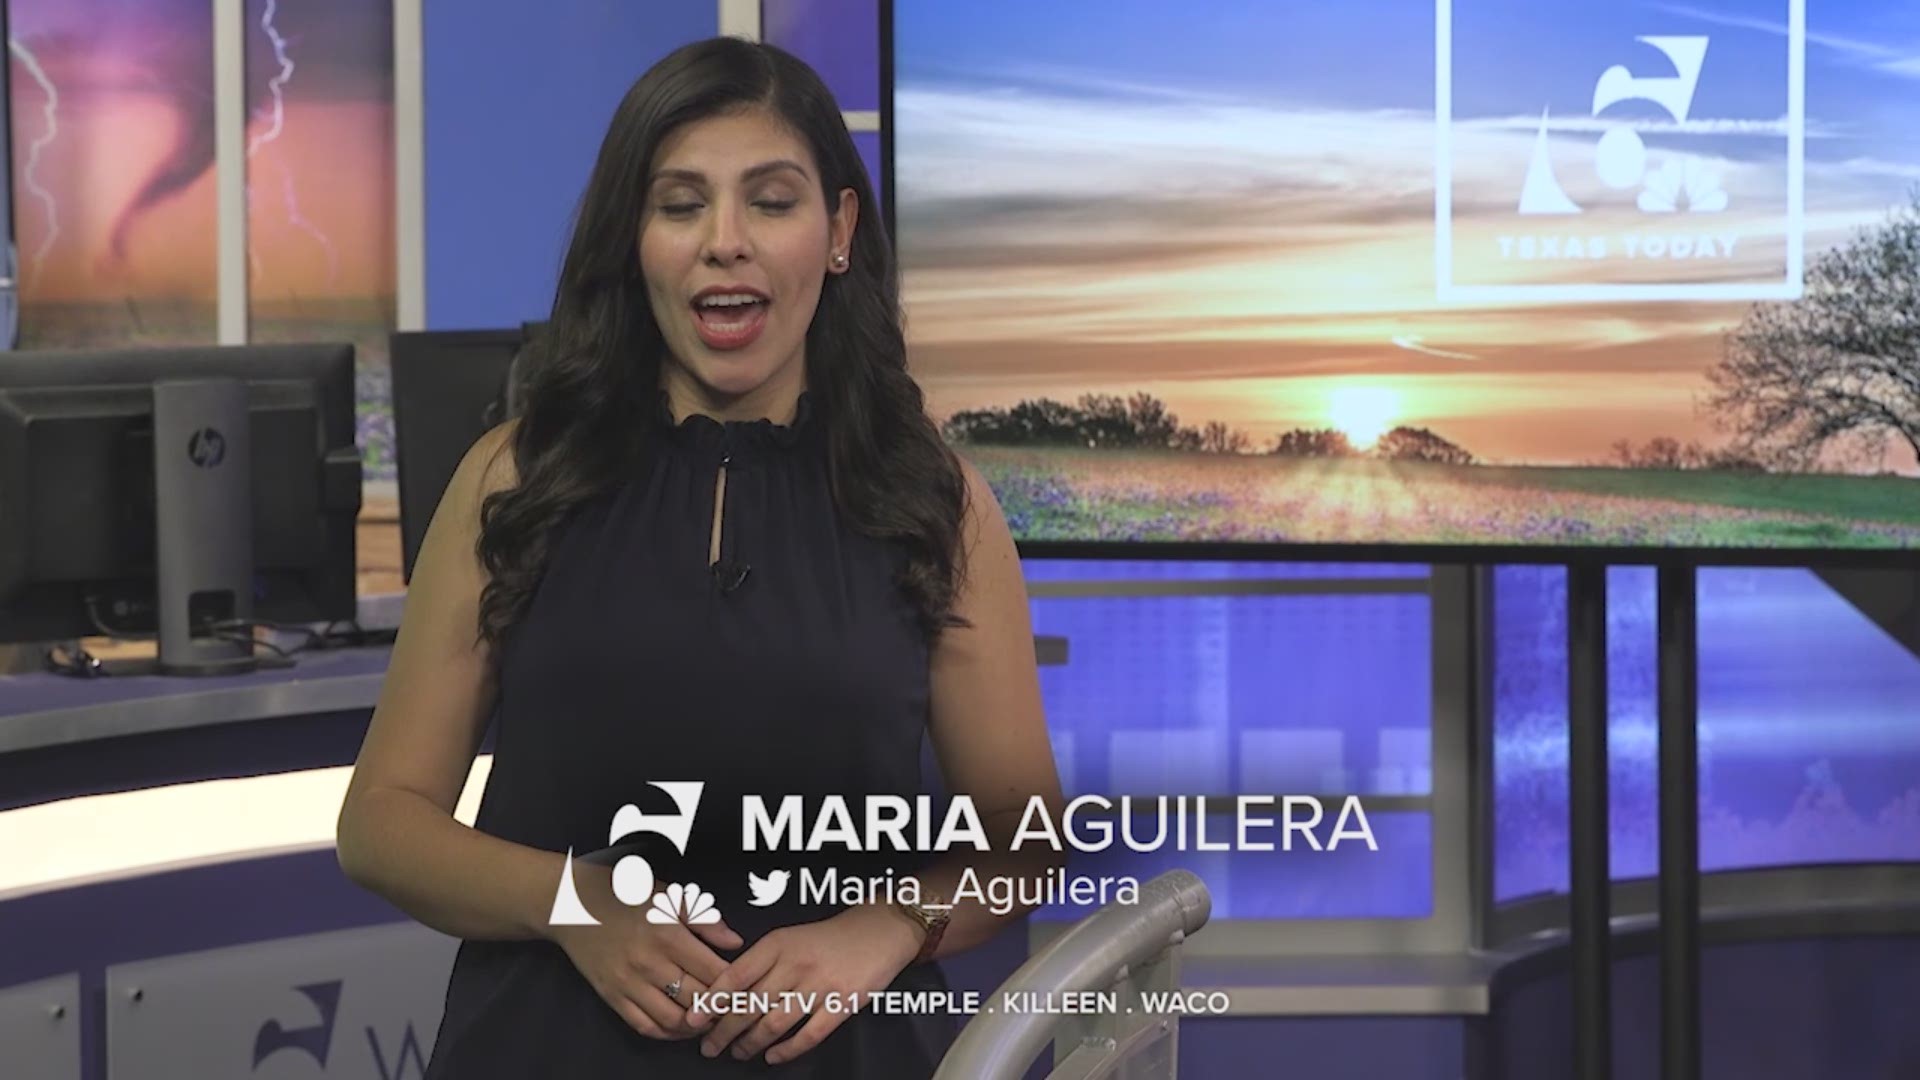 Maria Aguilera, Texas Today reporter